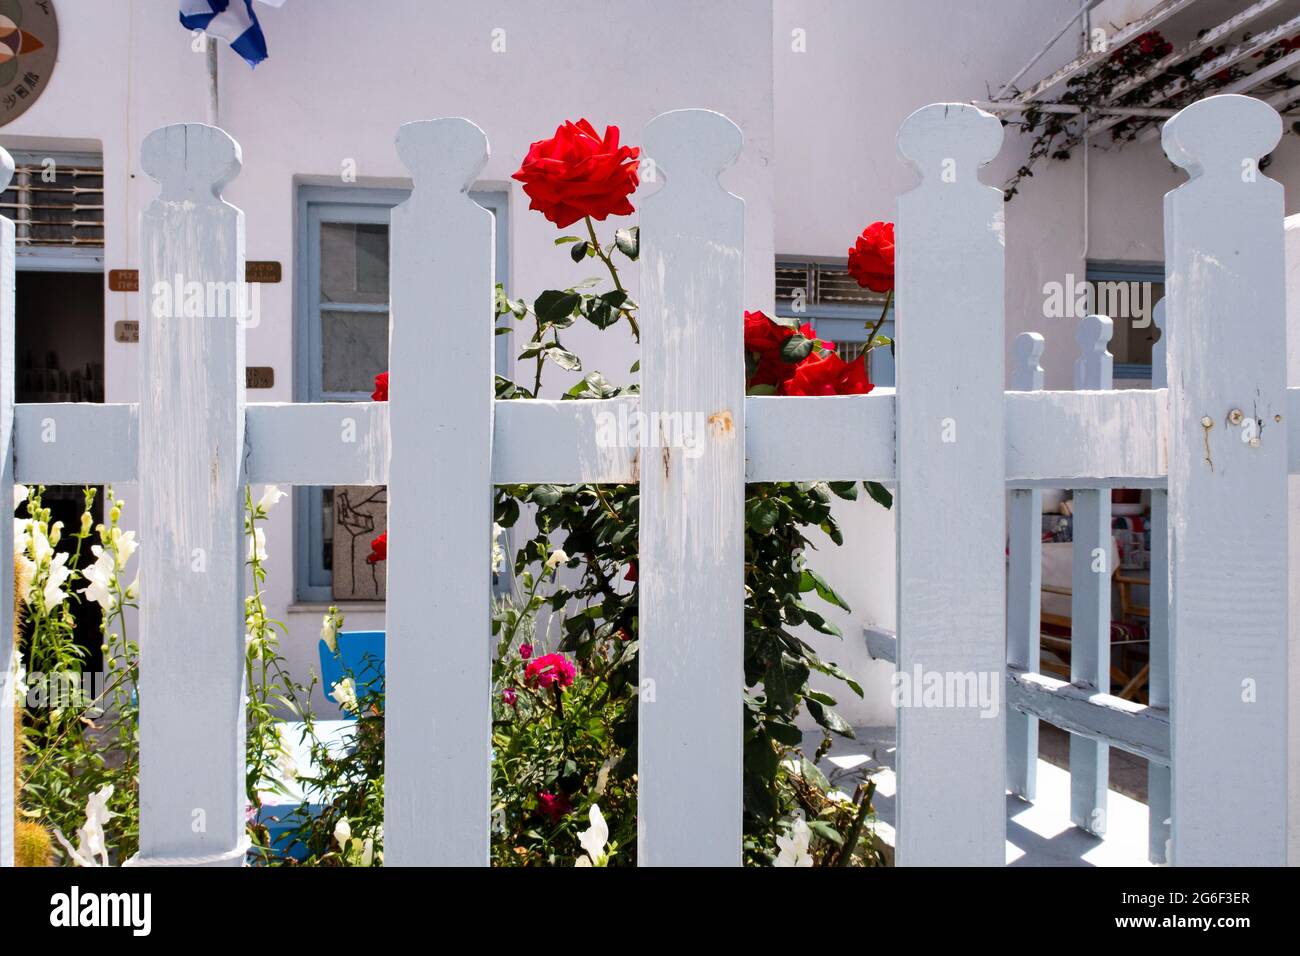 Clôture en bois blanc-neige typique avec des roses rouges et des plantes en fleur derrière dans la ville de Plaka sur l'île de Milos, Grèce. Banque D'Images